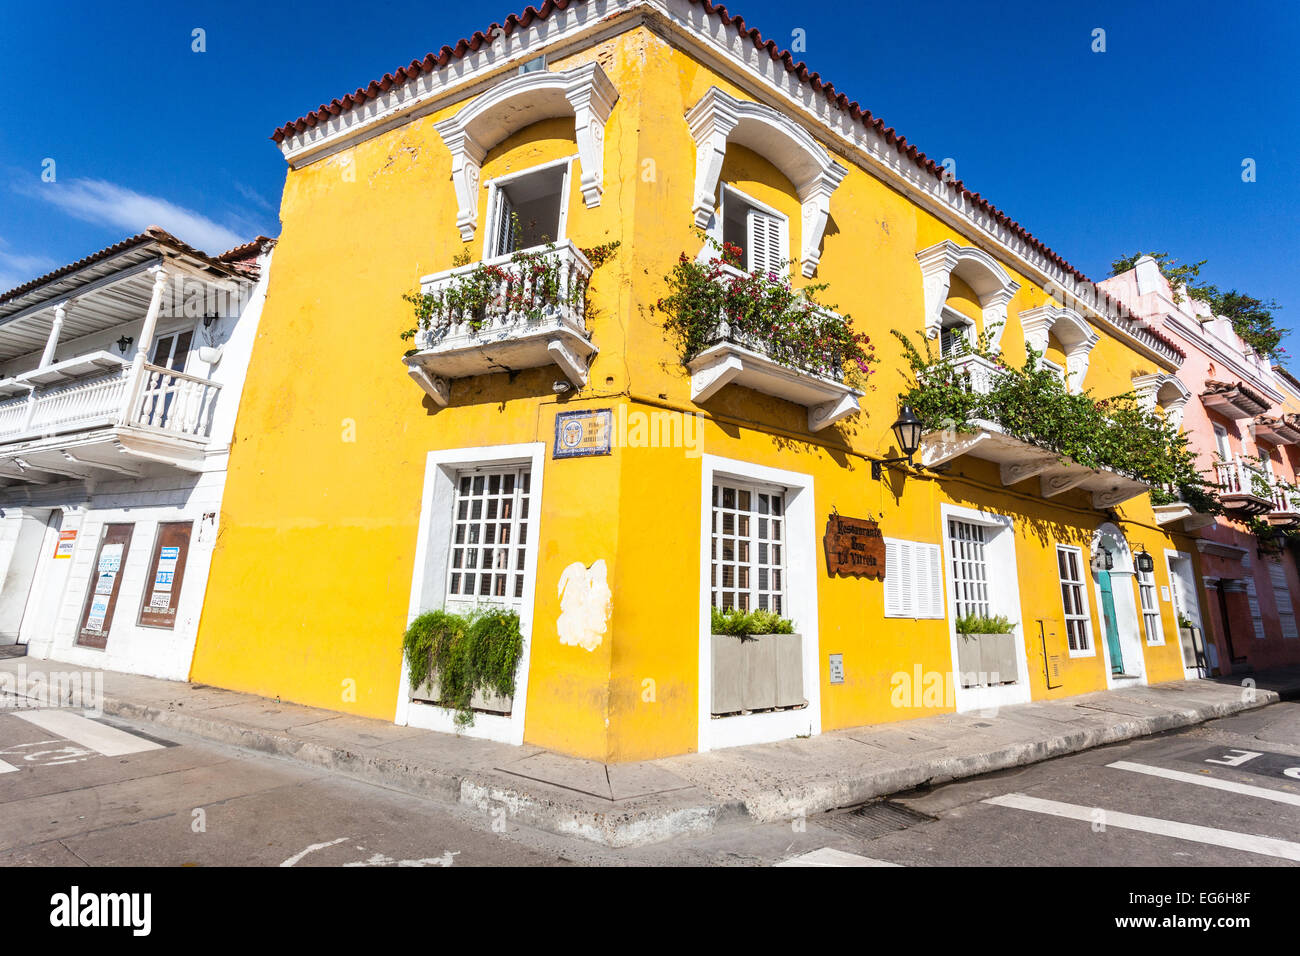 Maison coloniale espagnole, la plage de Carril, Cartagena de Indias, Colombie. Banque D'Images